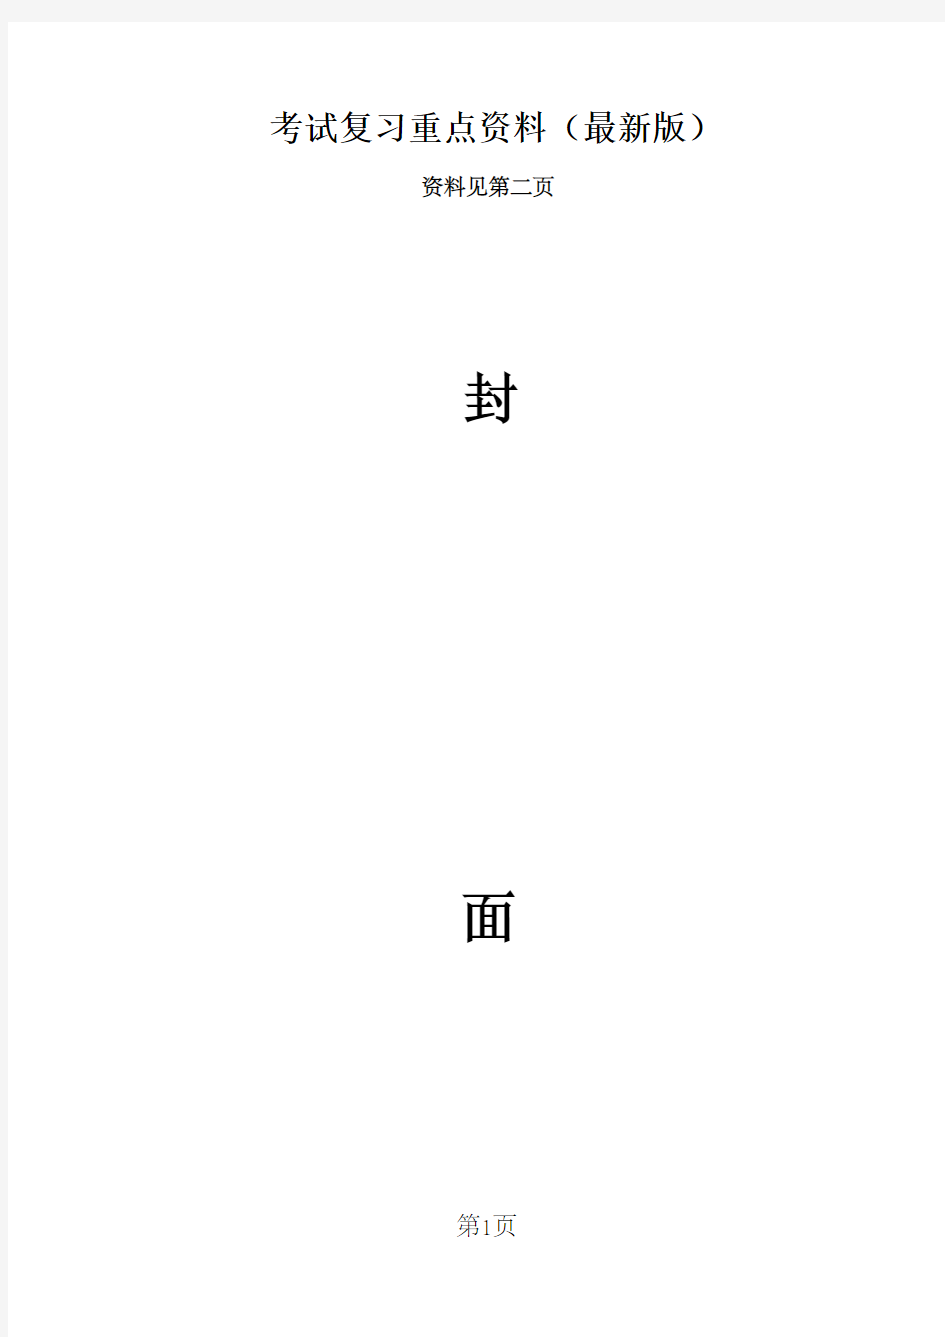 北京师范大学《普通语言学概要》重点笔记